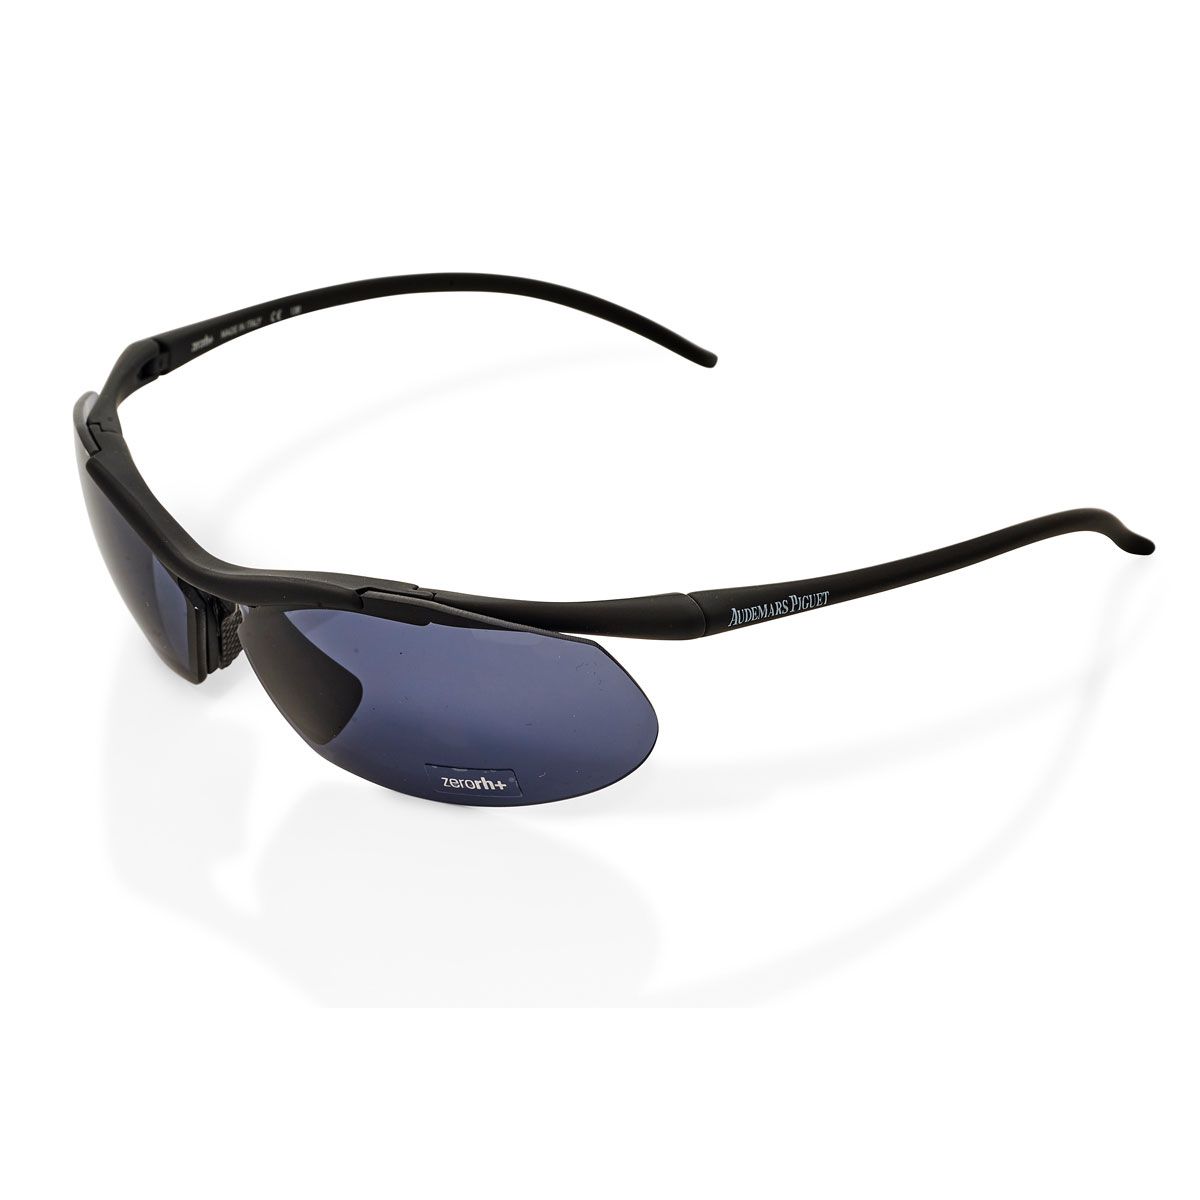 Null Zero Rh+ para Audemars Piguet Alinghi, accesorio.

Unas gafas de sol para c&hellip;